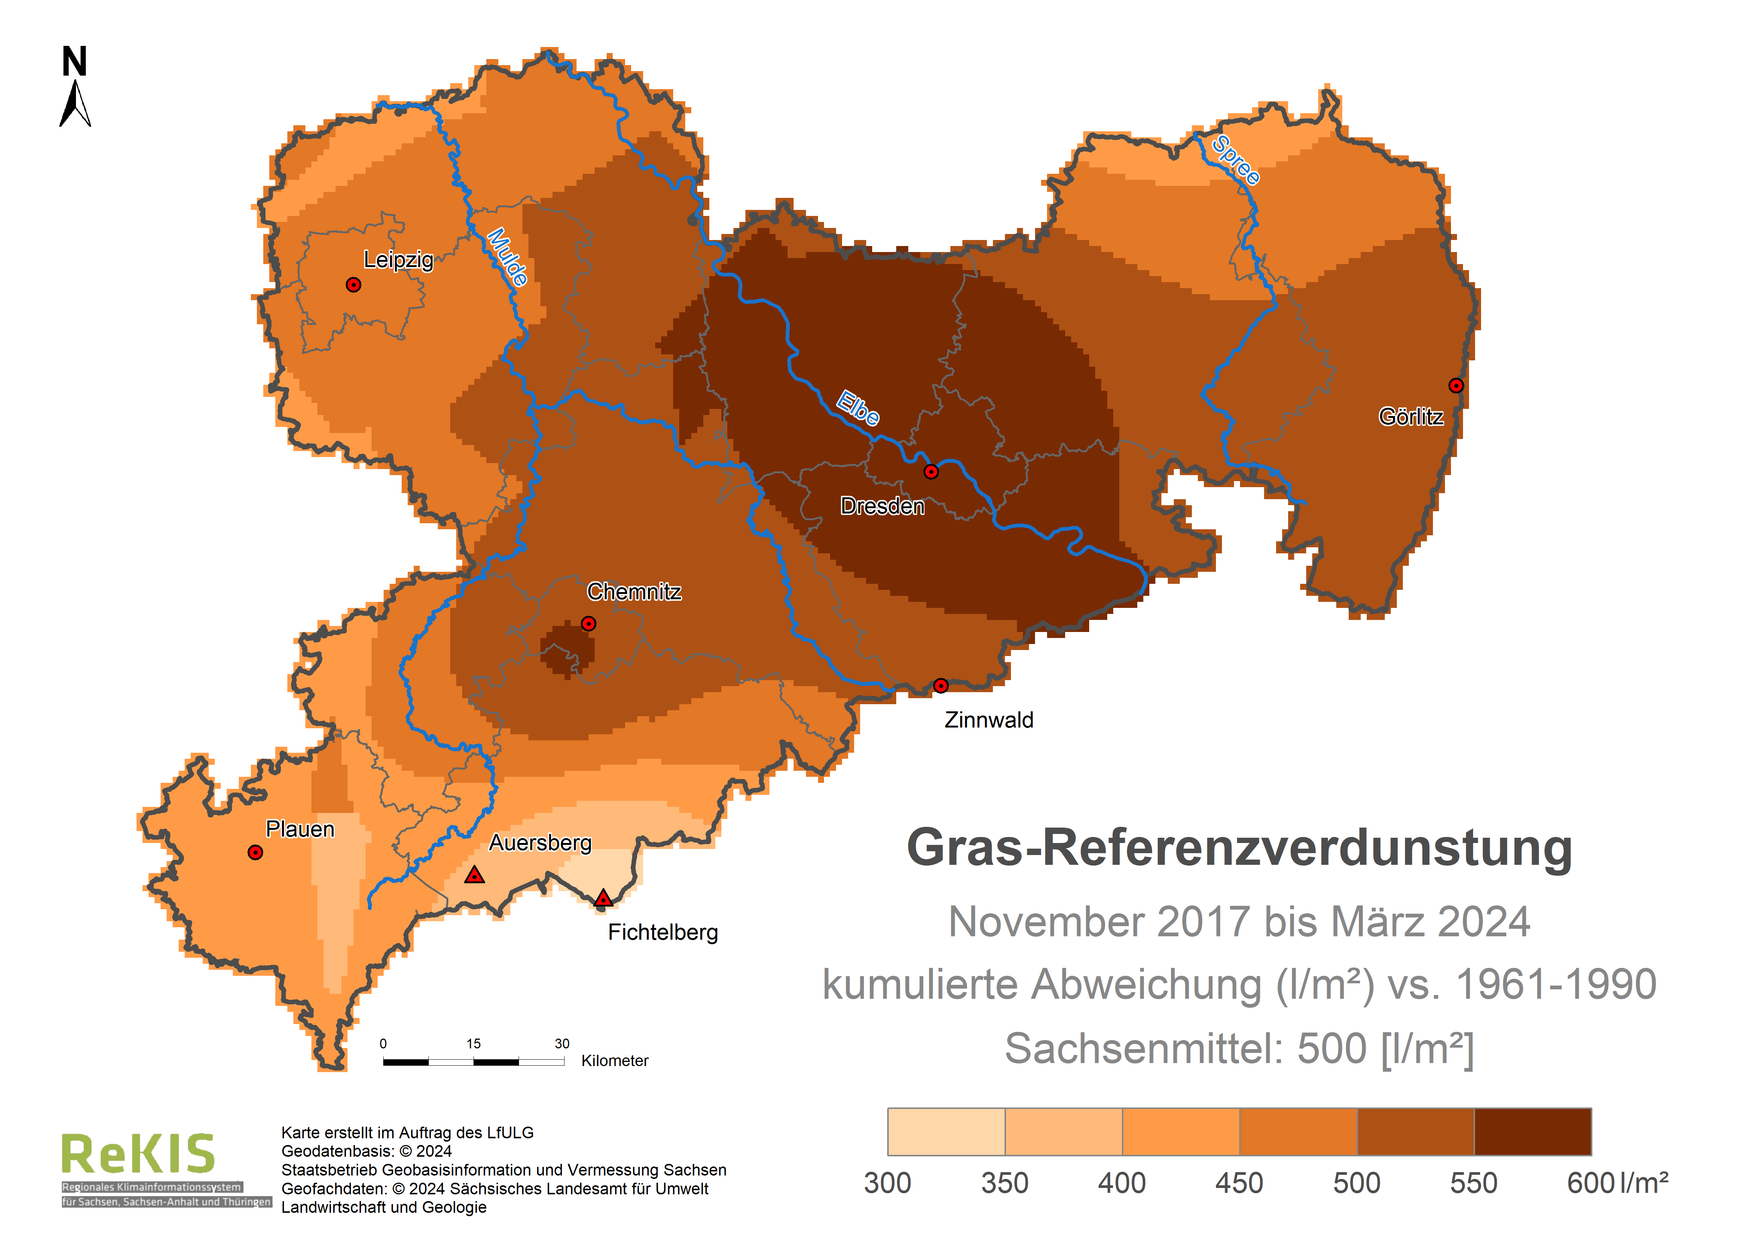 Karte Sachsen mit Darstellung der Gras-Referenzverdunstung im Vergleich zum Referenzzeitraum 1961 bis 1990